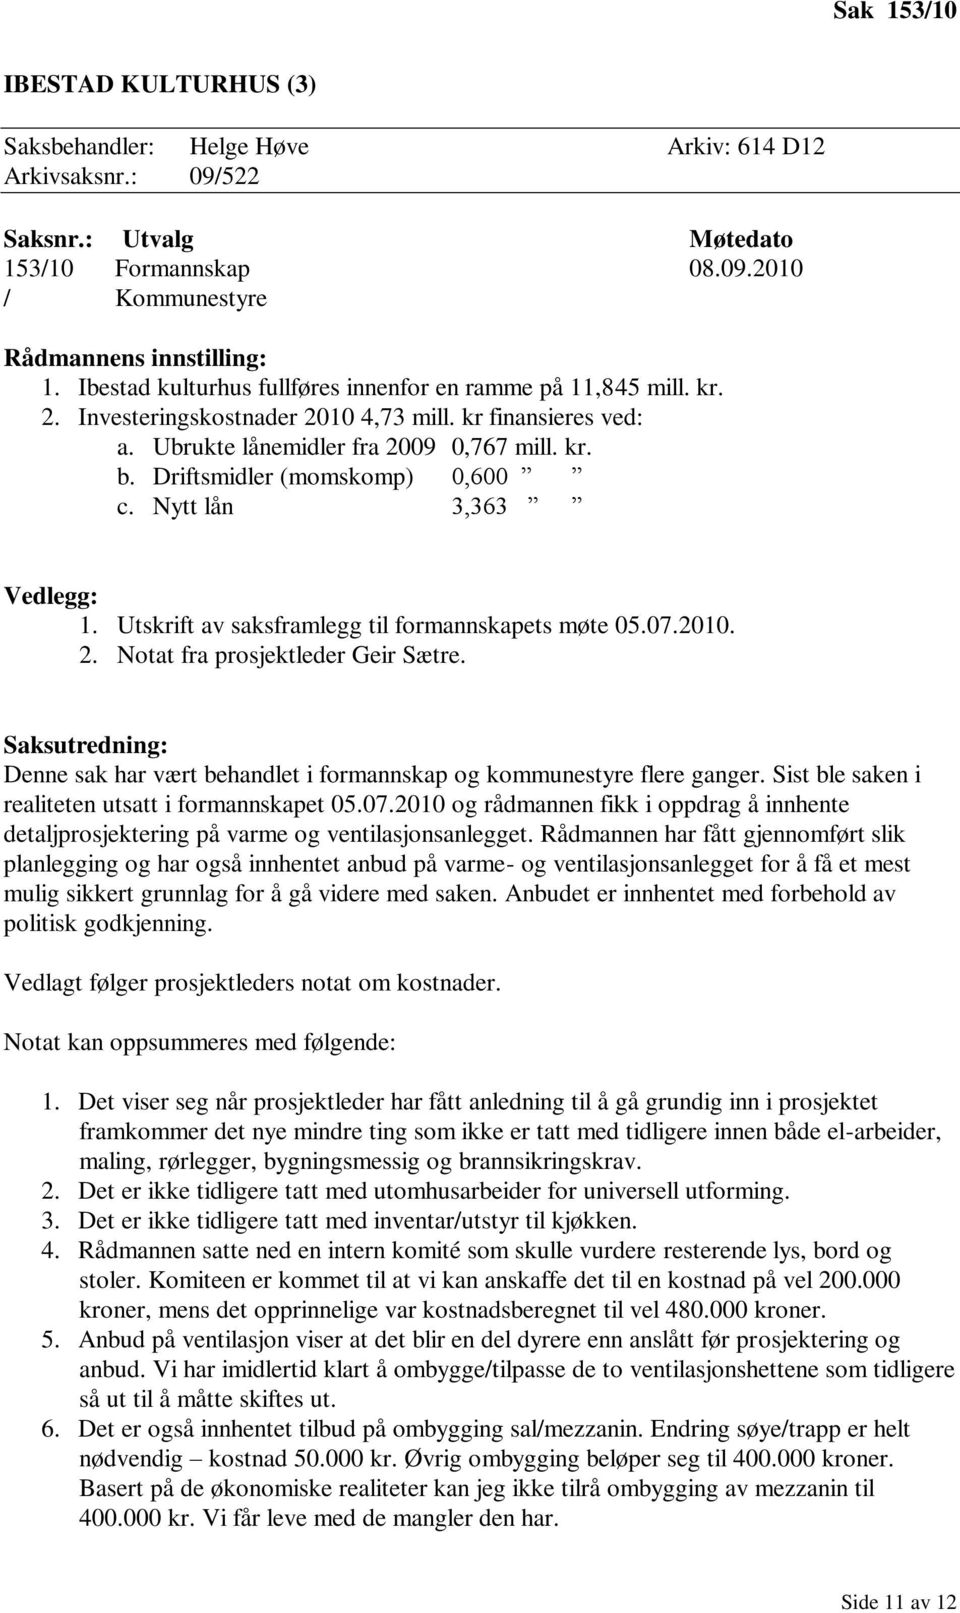 Driftsmidler (momskomp) 0,600 c. Nytt lån 3,363 Vedlegg: 1. Utskrift av saksframlegg til formannskapets møte 05.07.2010. 2. Notat fra prosjektleder Geir Sætre.